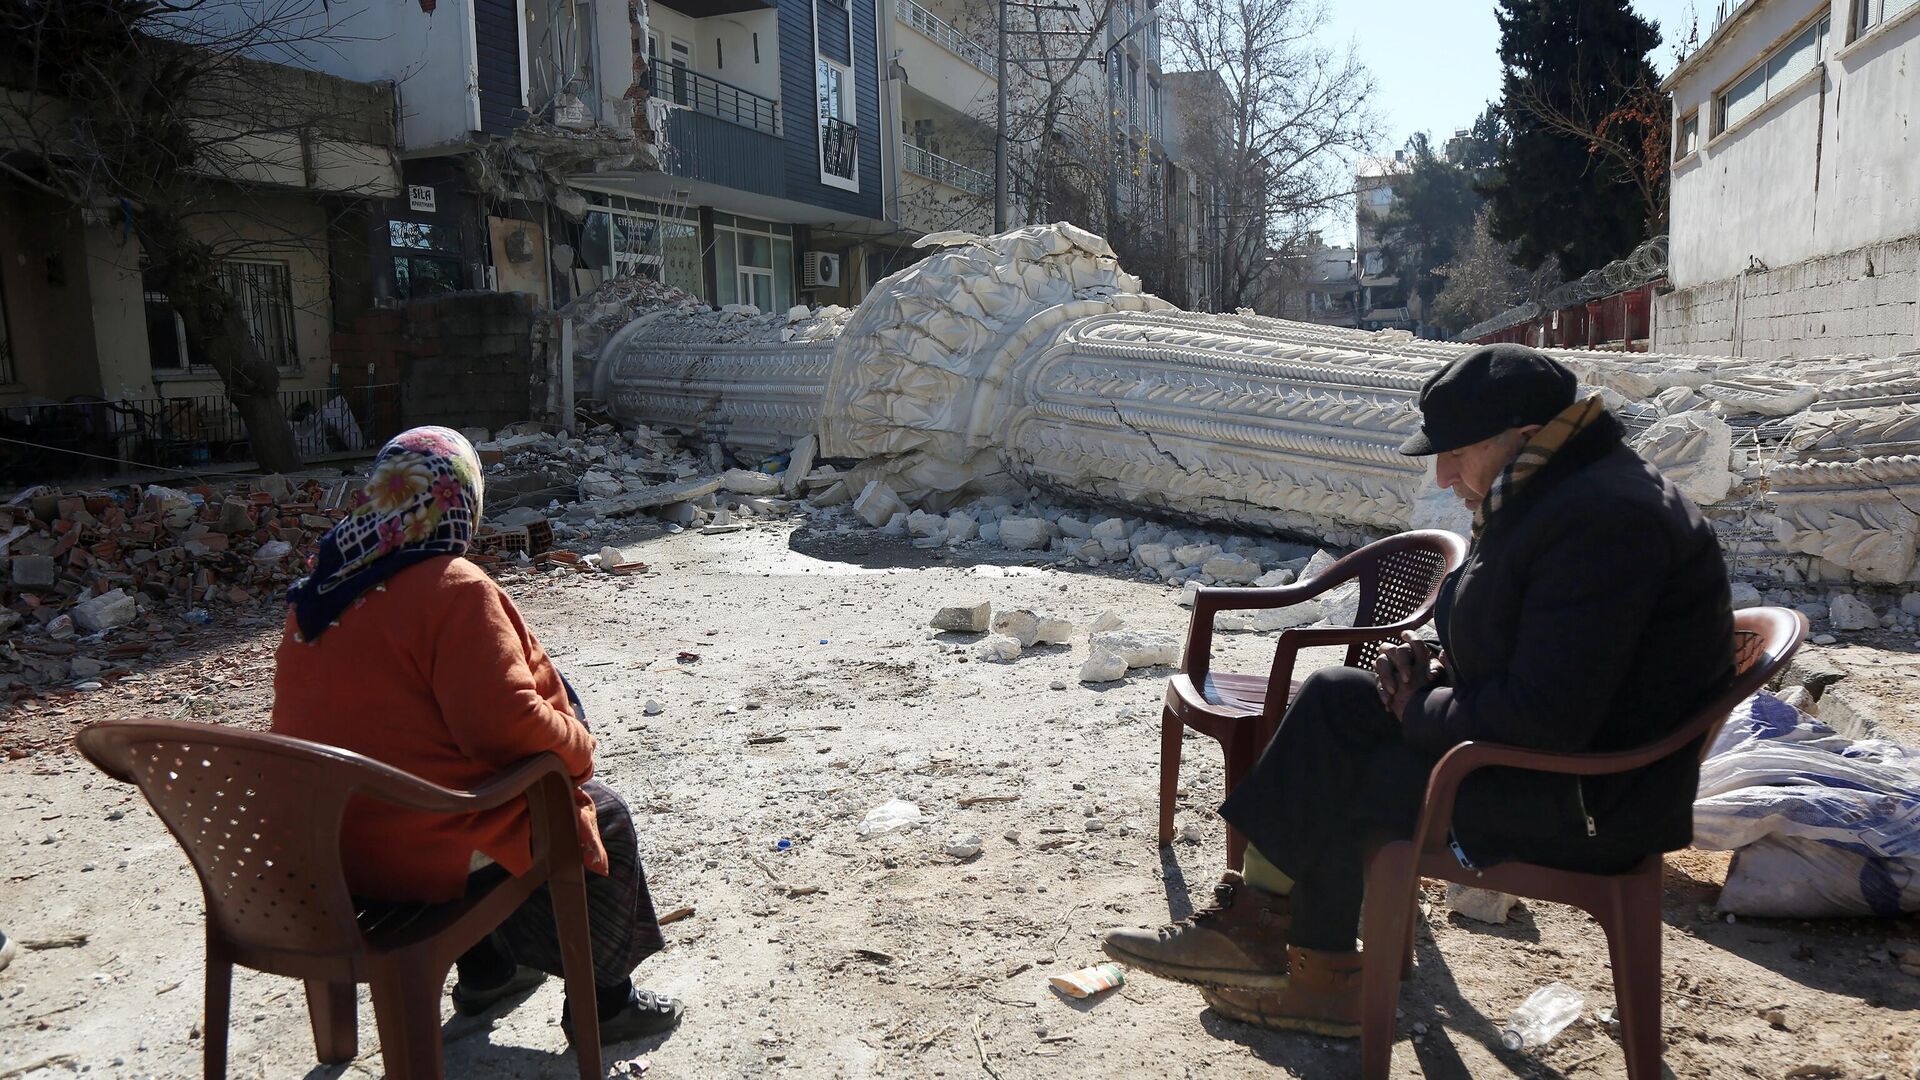 Жители на улице пострадавшего от землетрясения турецкого города Адыямана - РИА Новости, 1920, 20.03.2023